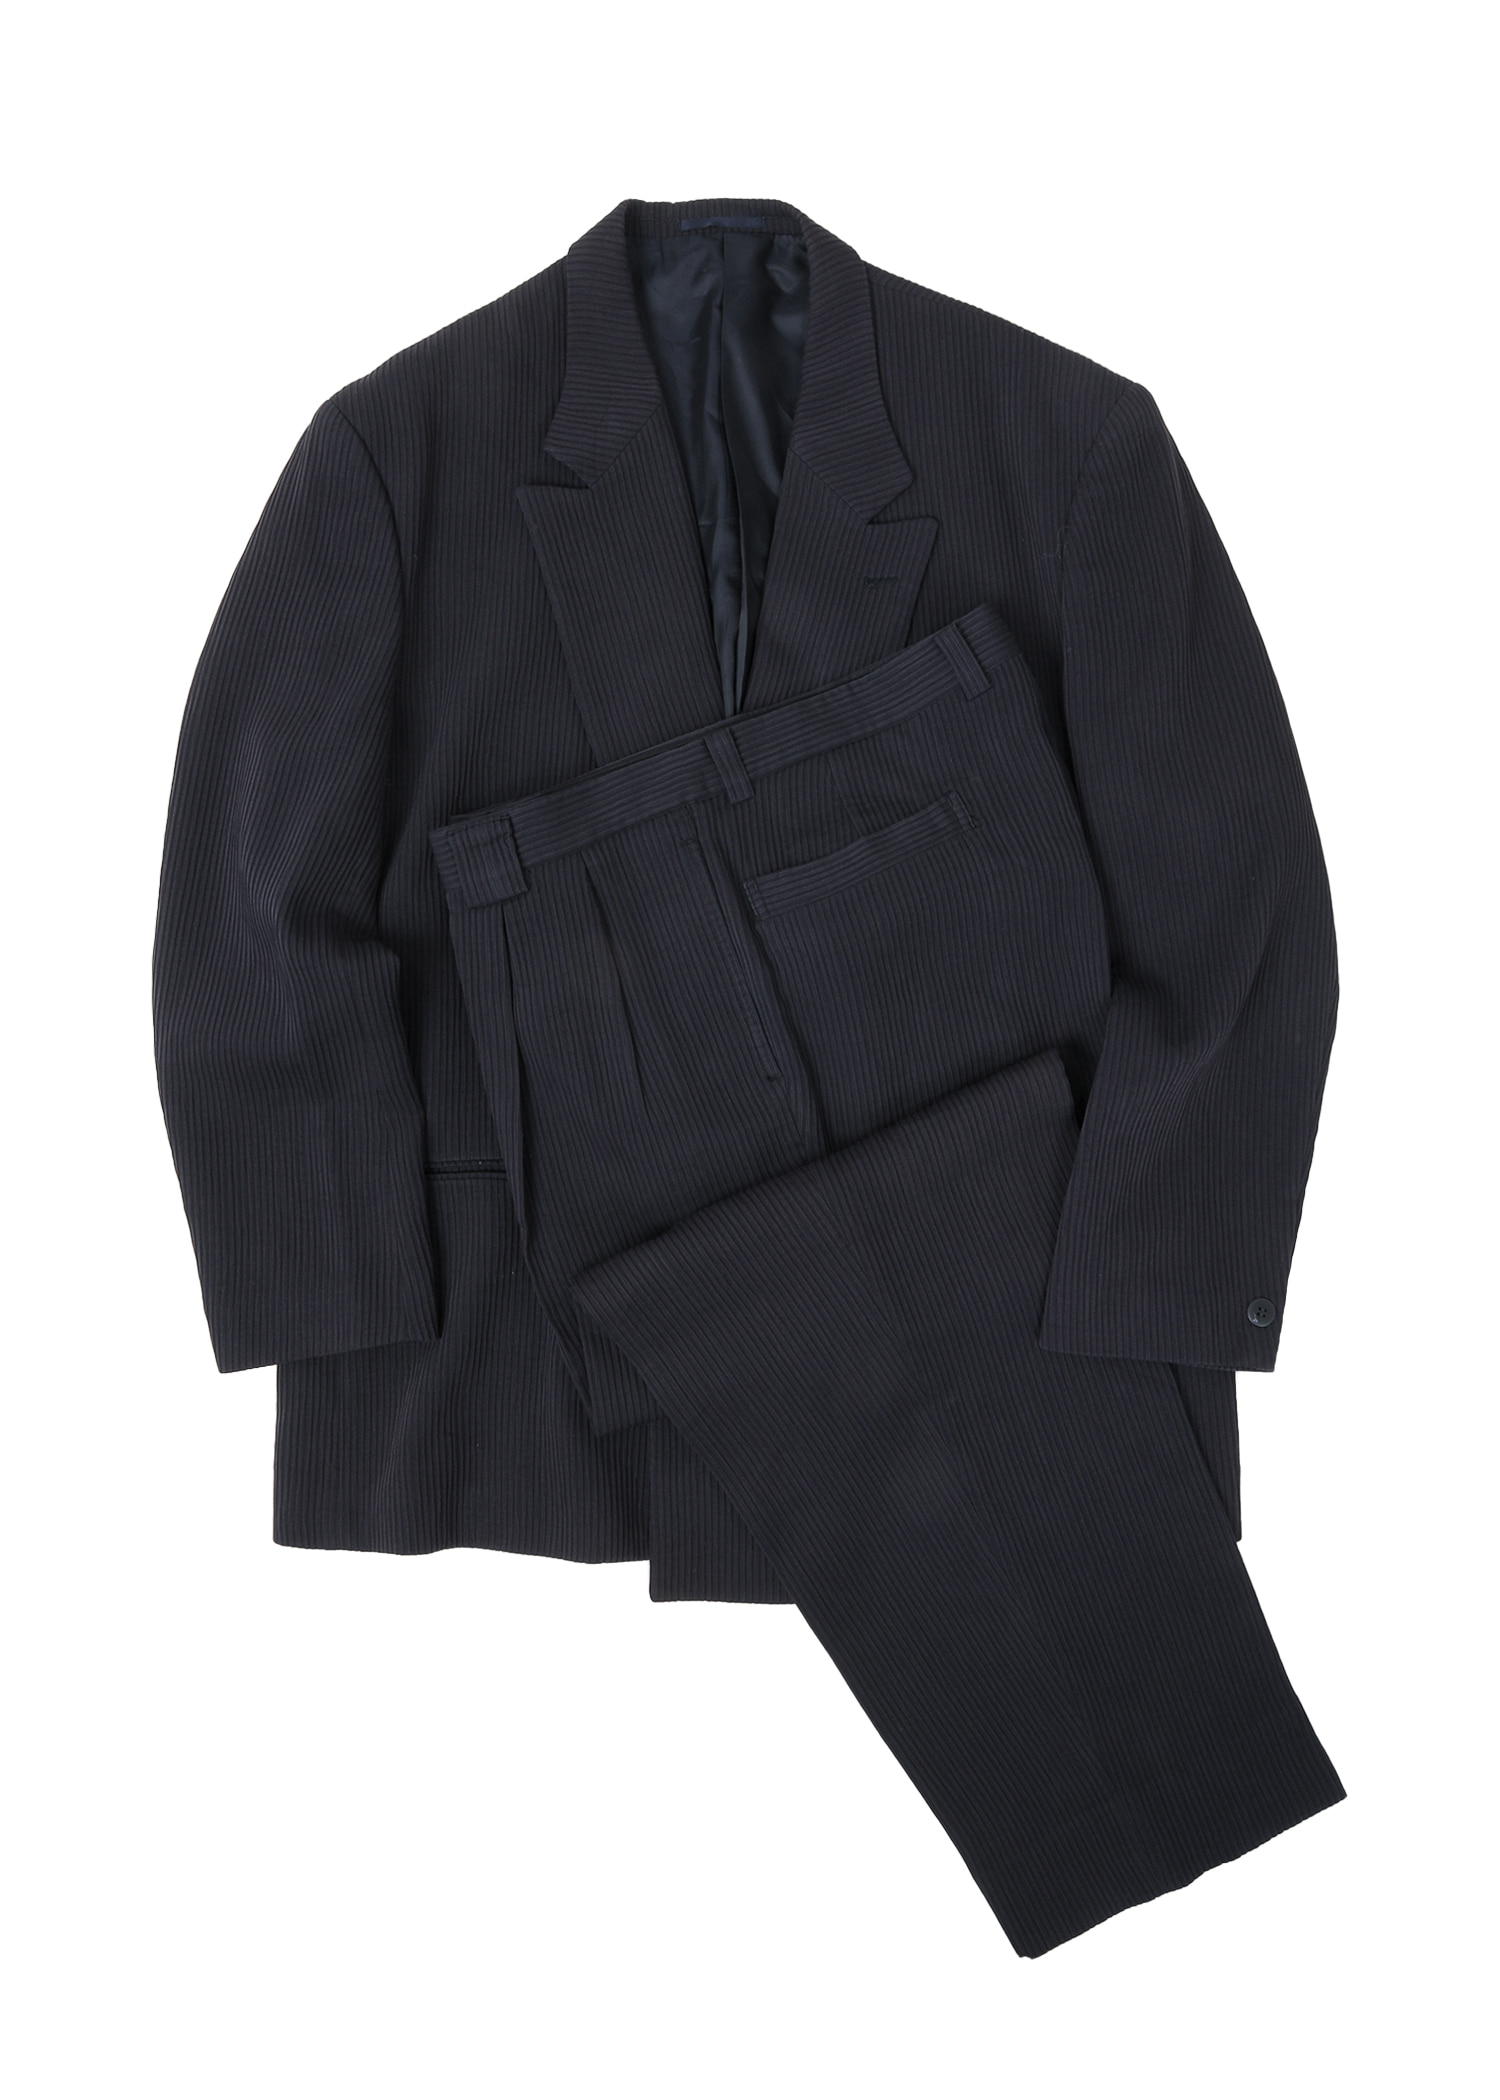 select vintage : overfit pleats suit